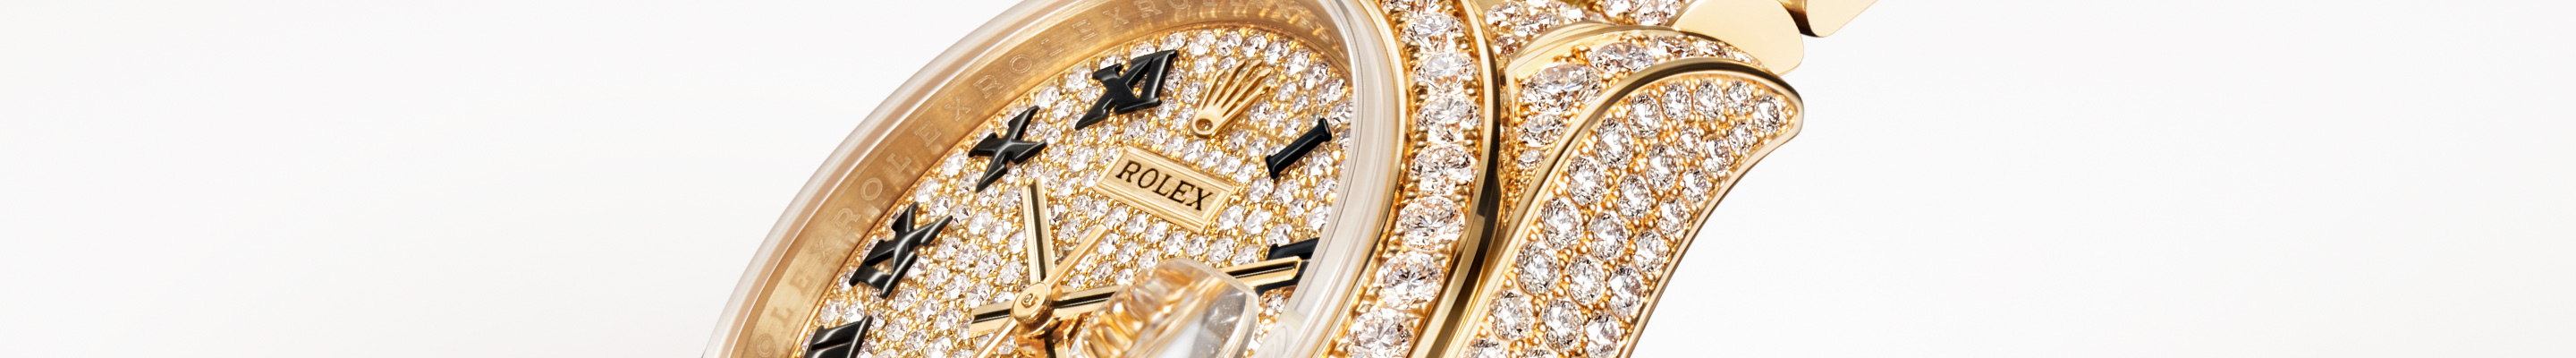 Rolex Watches William Barthman